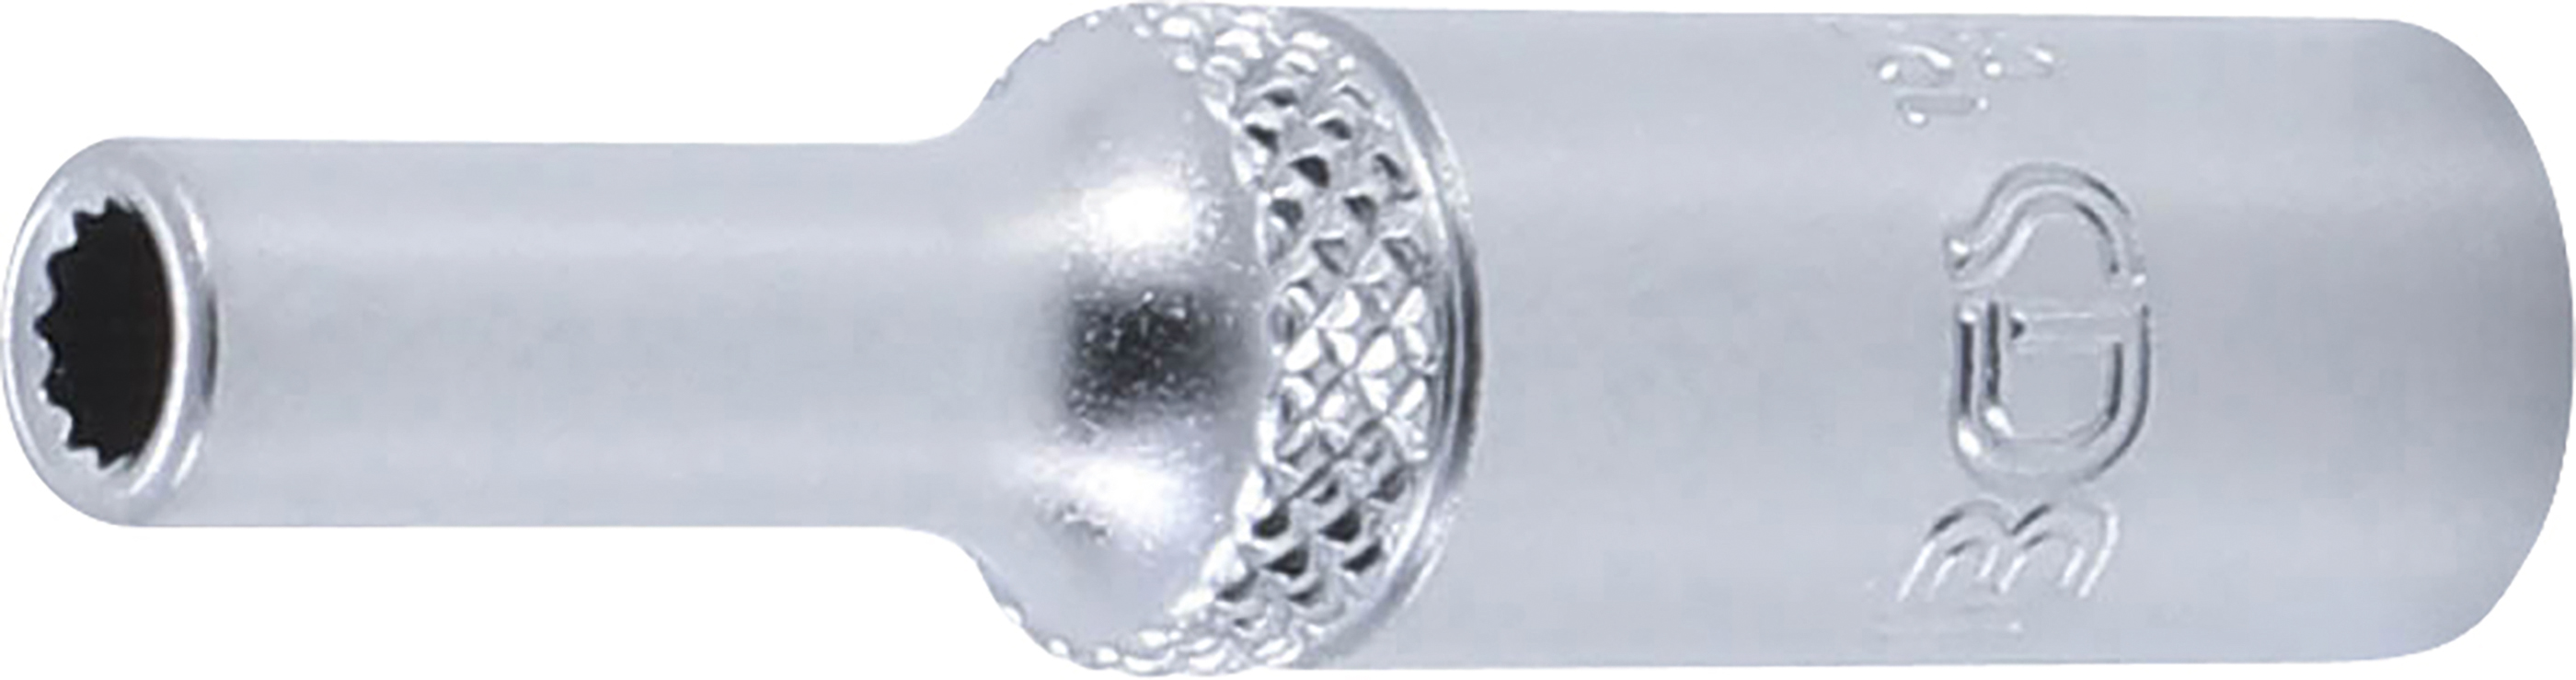 BGS 10702  Cheie tubulară  4 mm in 12 colțuri, lungă cu antrenare 6,3 mm (1/4")mm